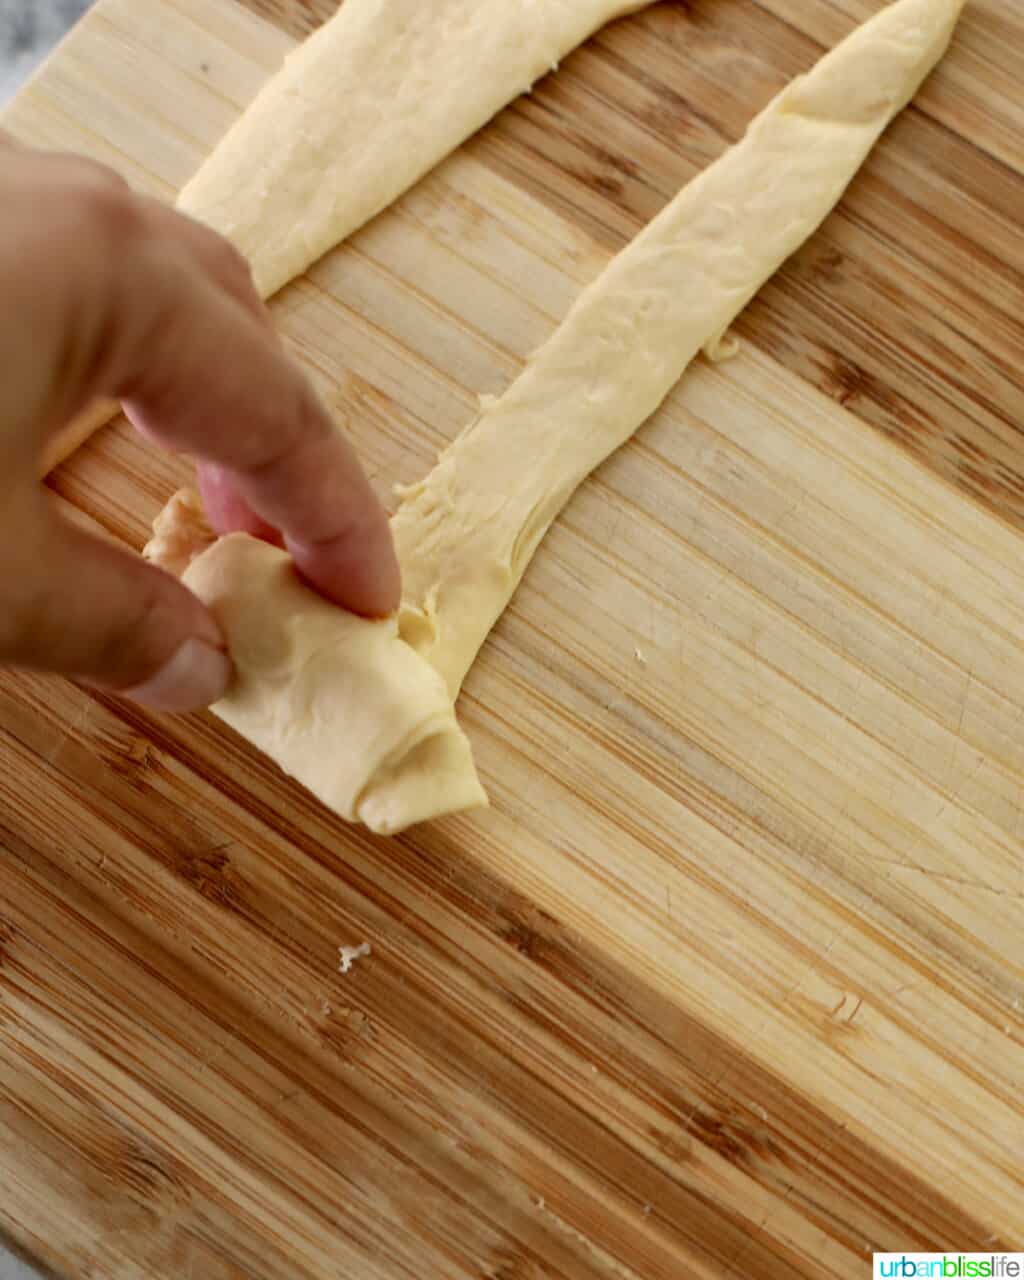 rolling mozzarella cheese inside dough